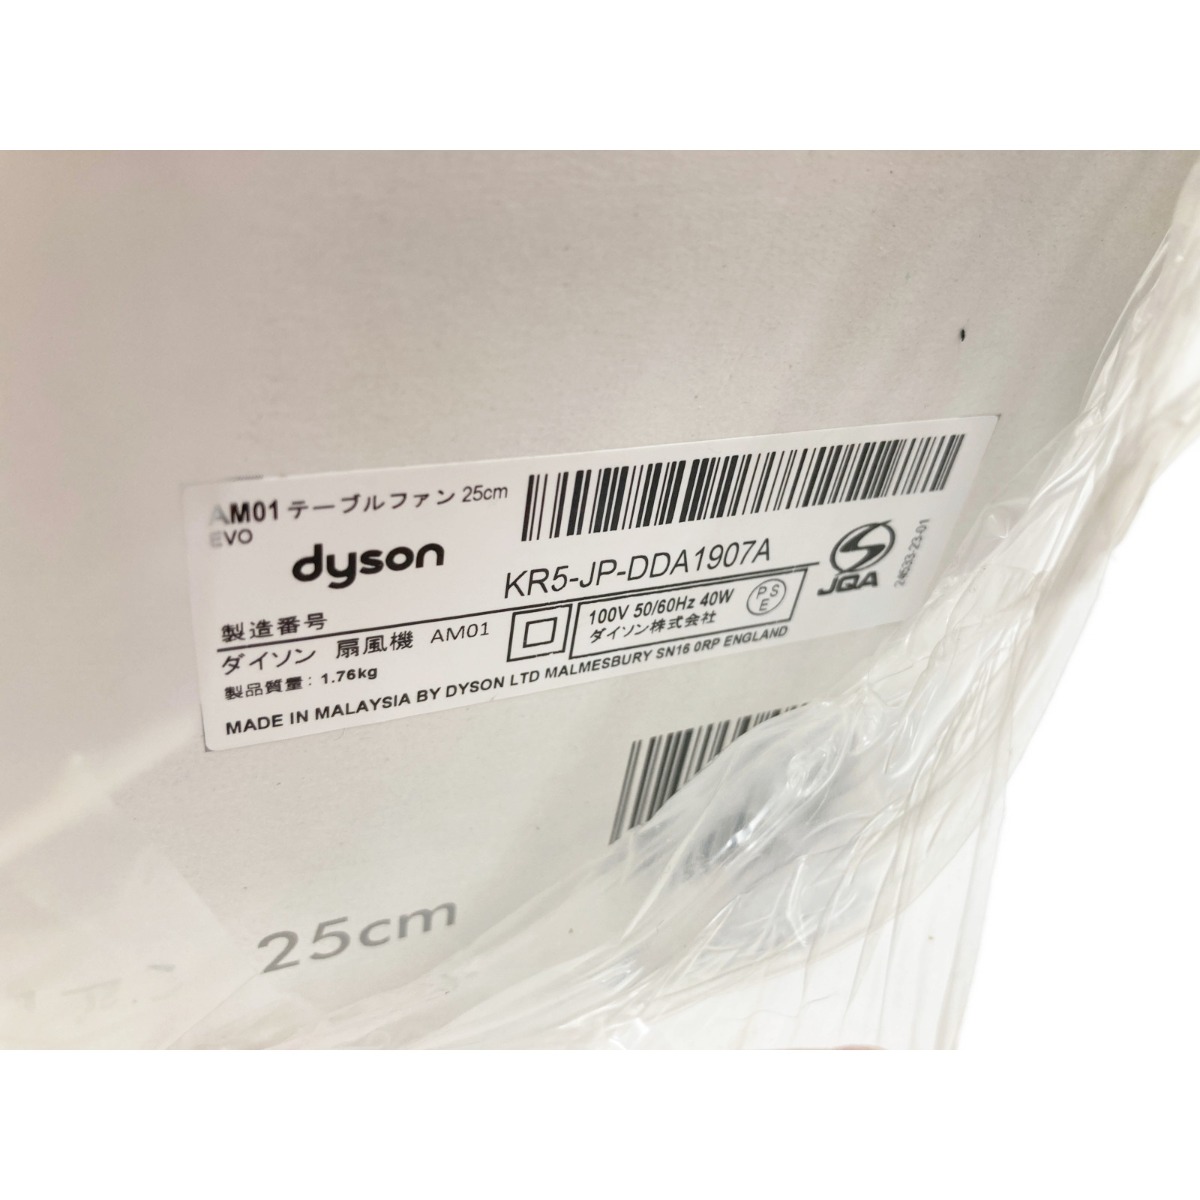 【楽天市場】〇〇【中古】Dyson ダイソン air multiplier エアーマルチプライヤー 25cm AM01 未開封品 Nランク